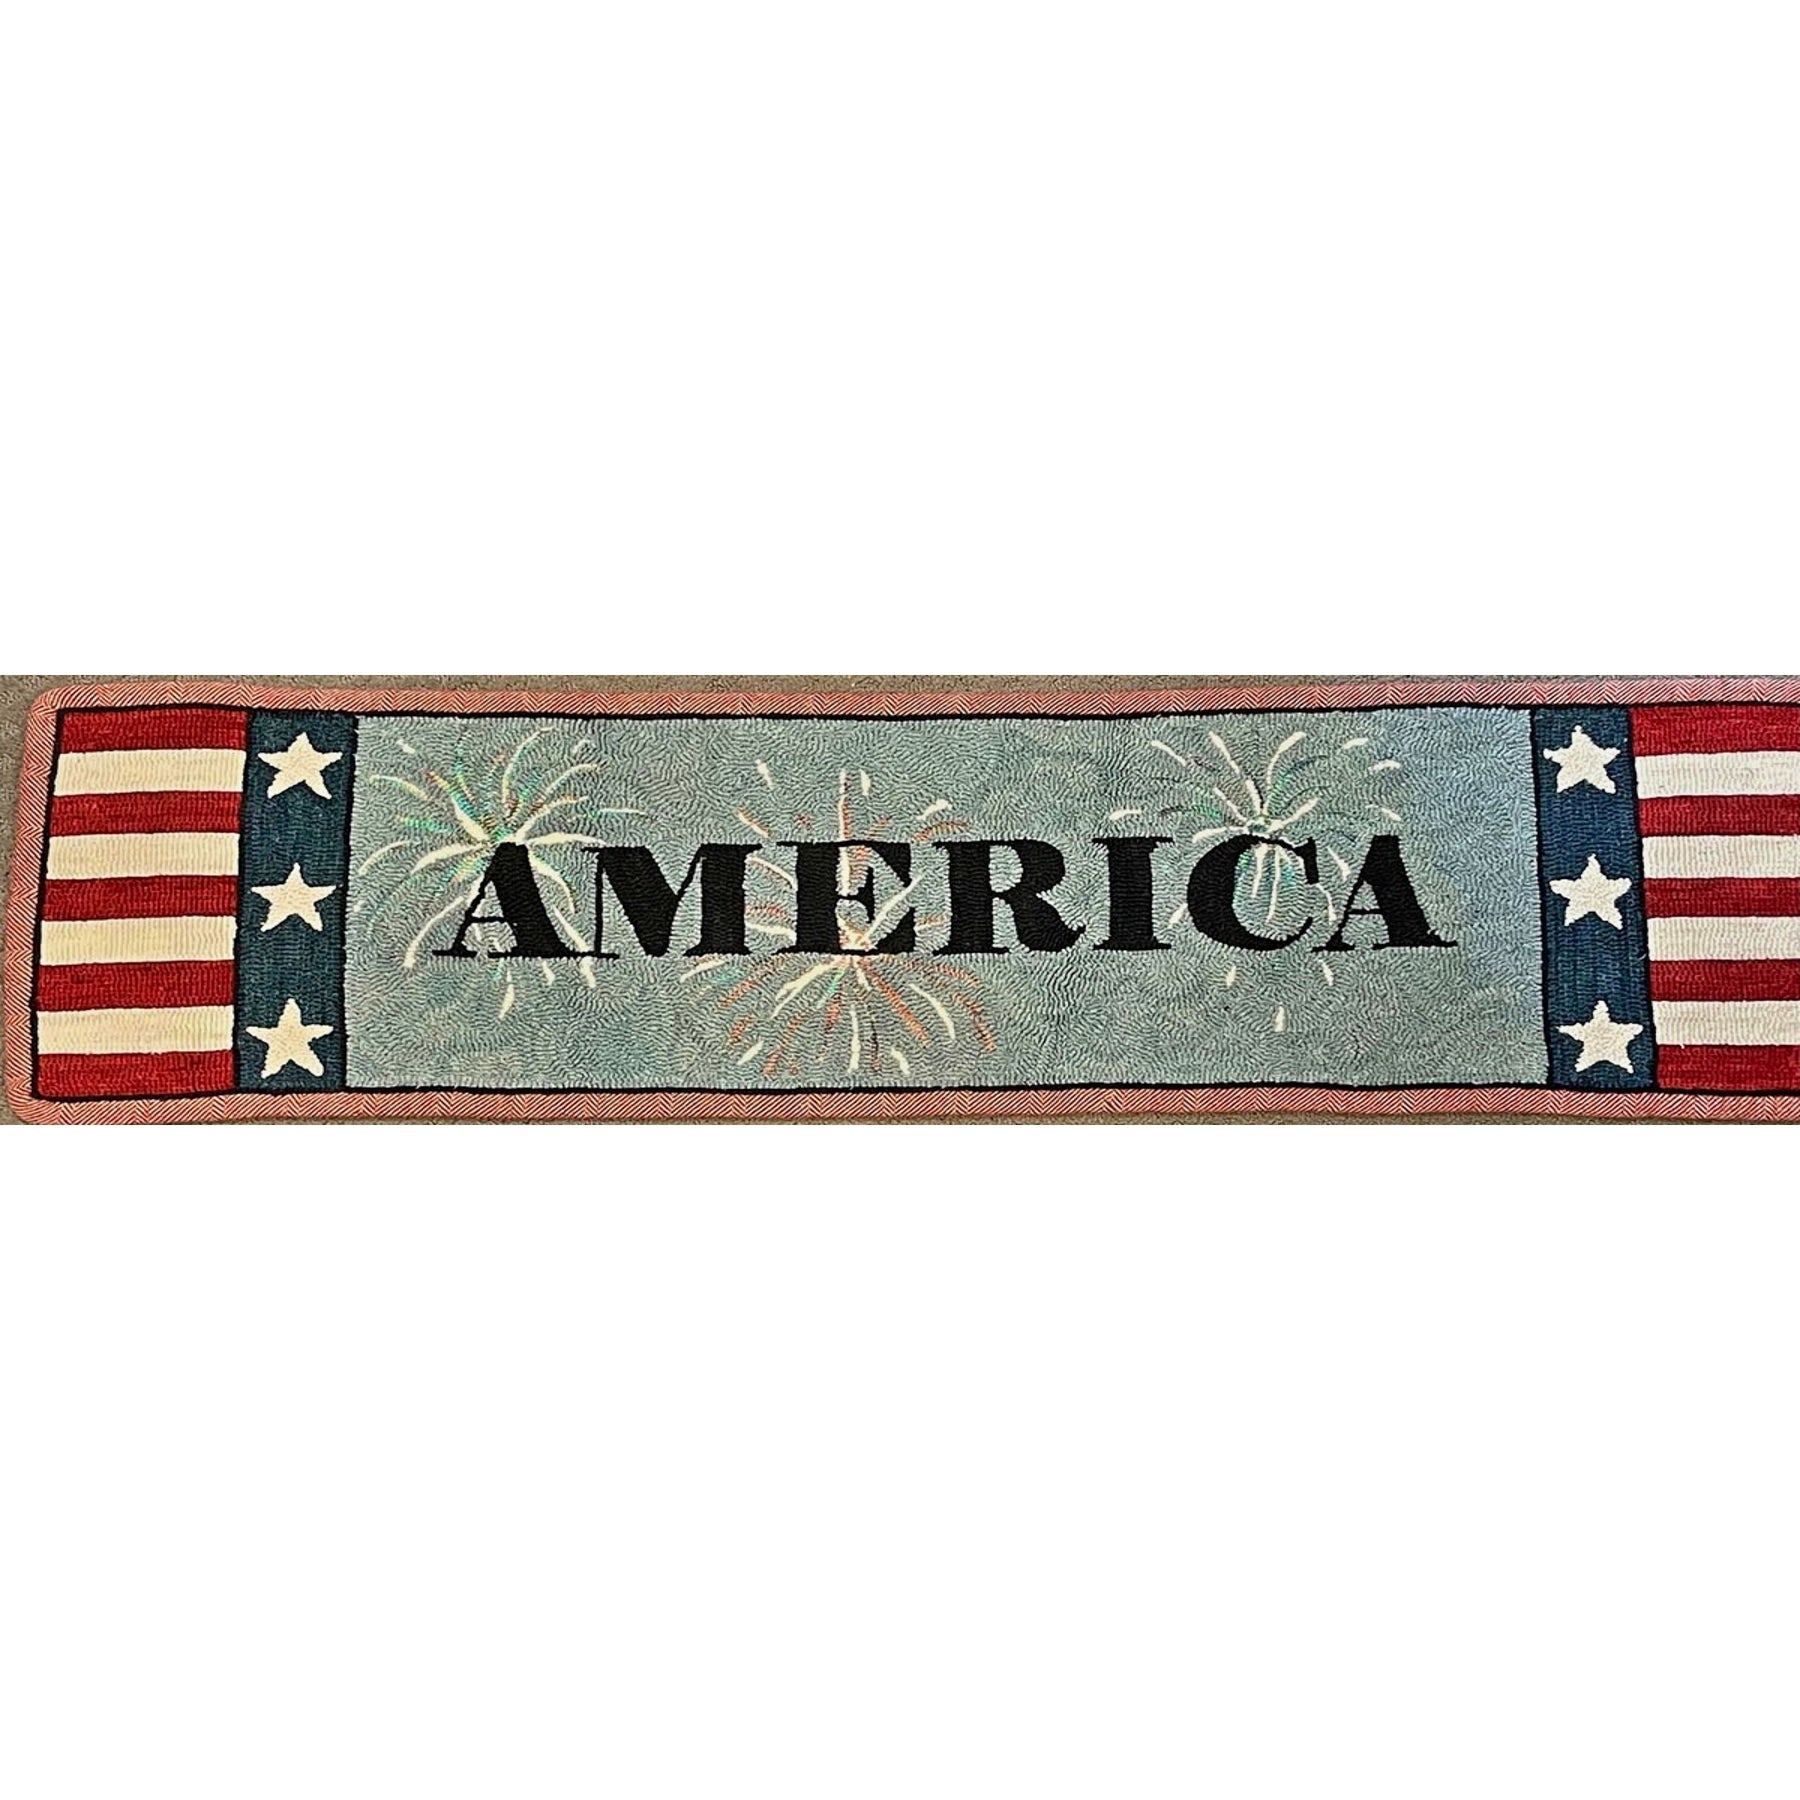 America, rug hooking pattern